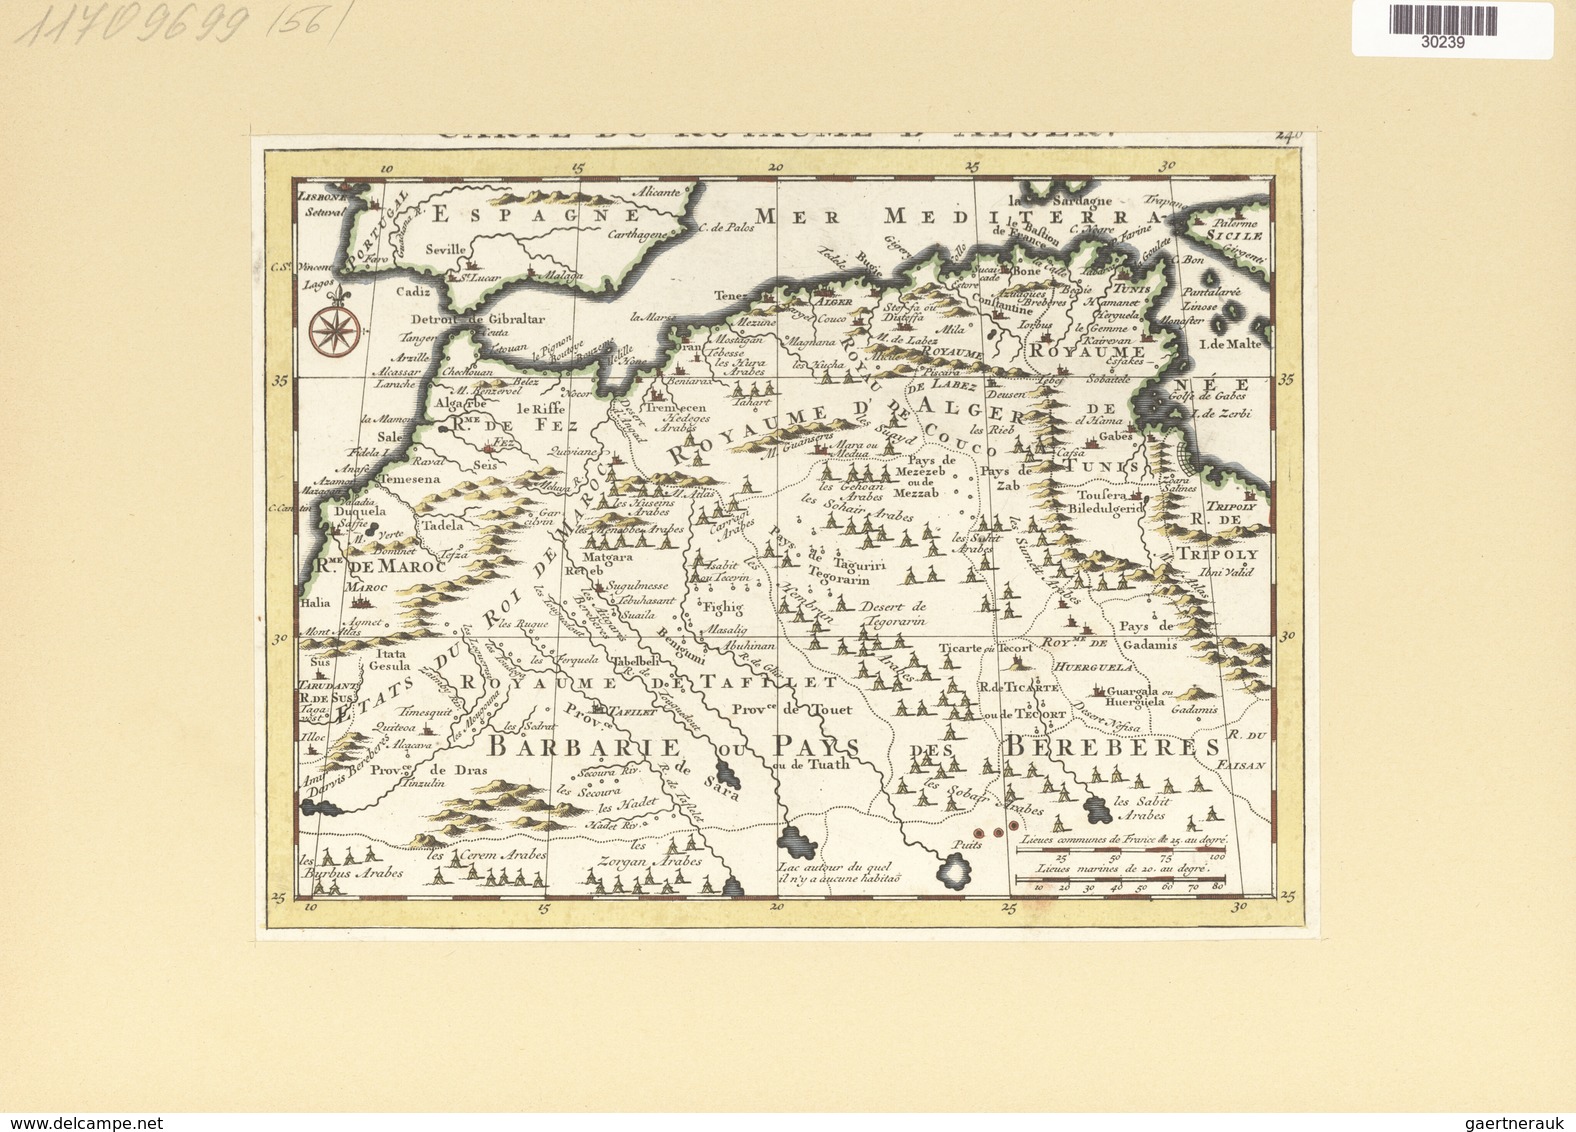 Landkarten Und Stiche: 1734. Carte Du Royaume D' Alger, As Published In The Mercator Atlas Minor 173 - Géographie